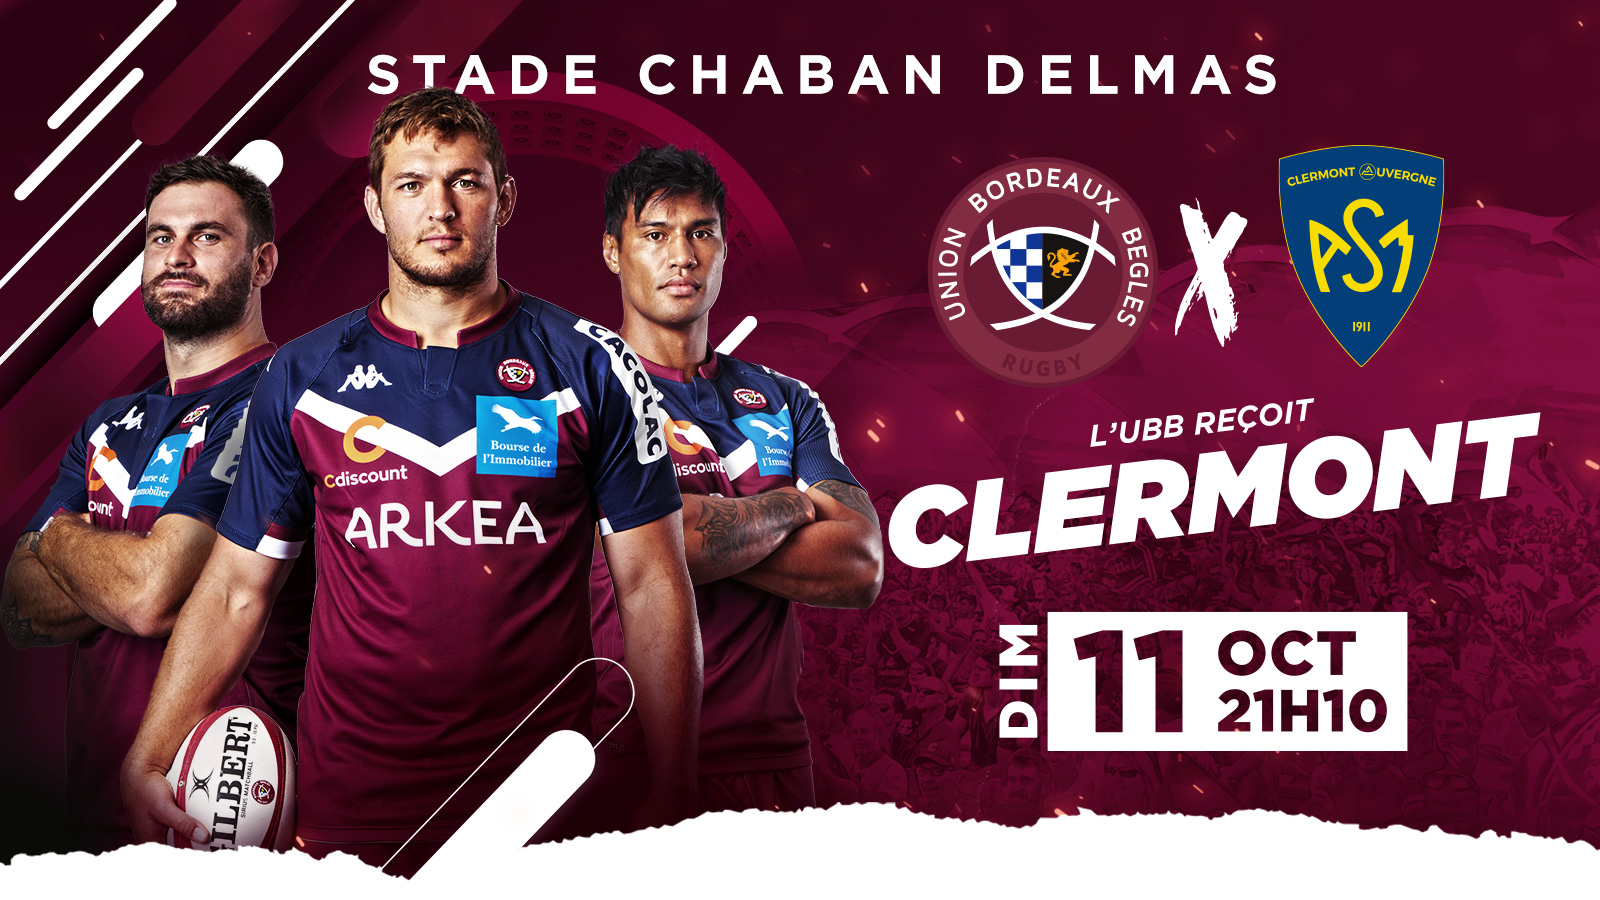 UBB - Clermont le dimanche 11 octobre 2020 à Chaban